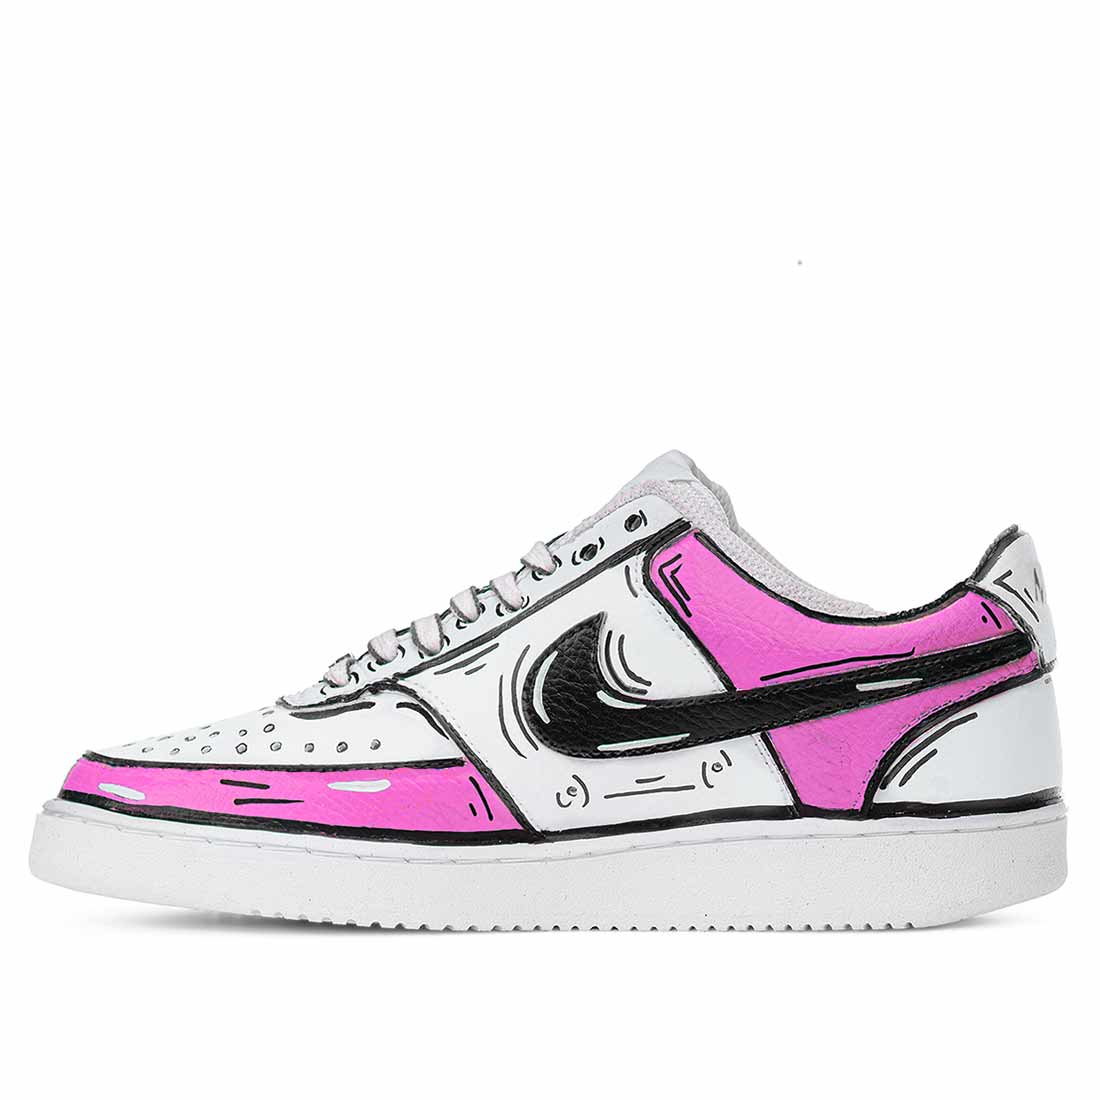 Scarpe da ginnastica Nike bianche effetto fumetto rosa disegnate 